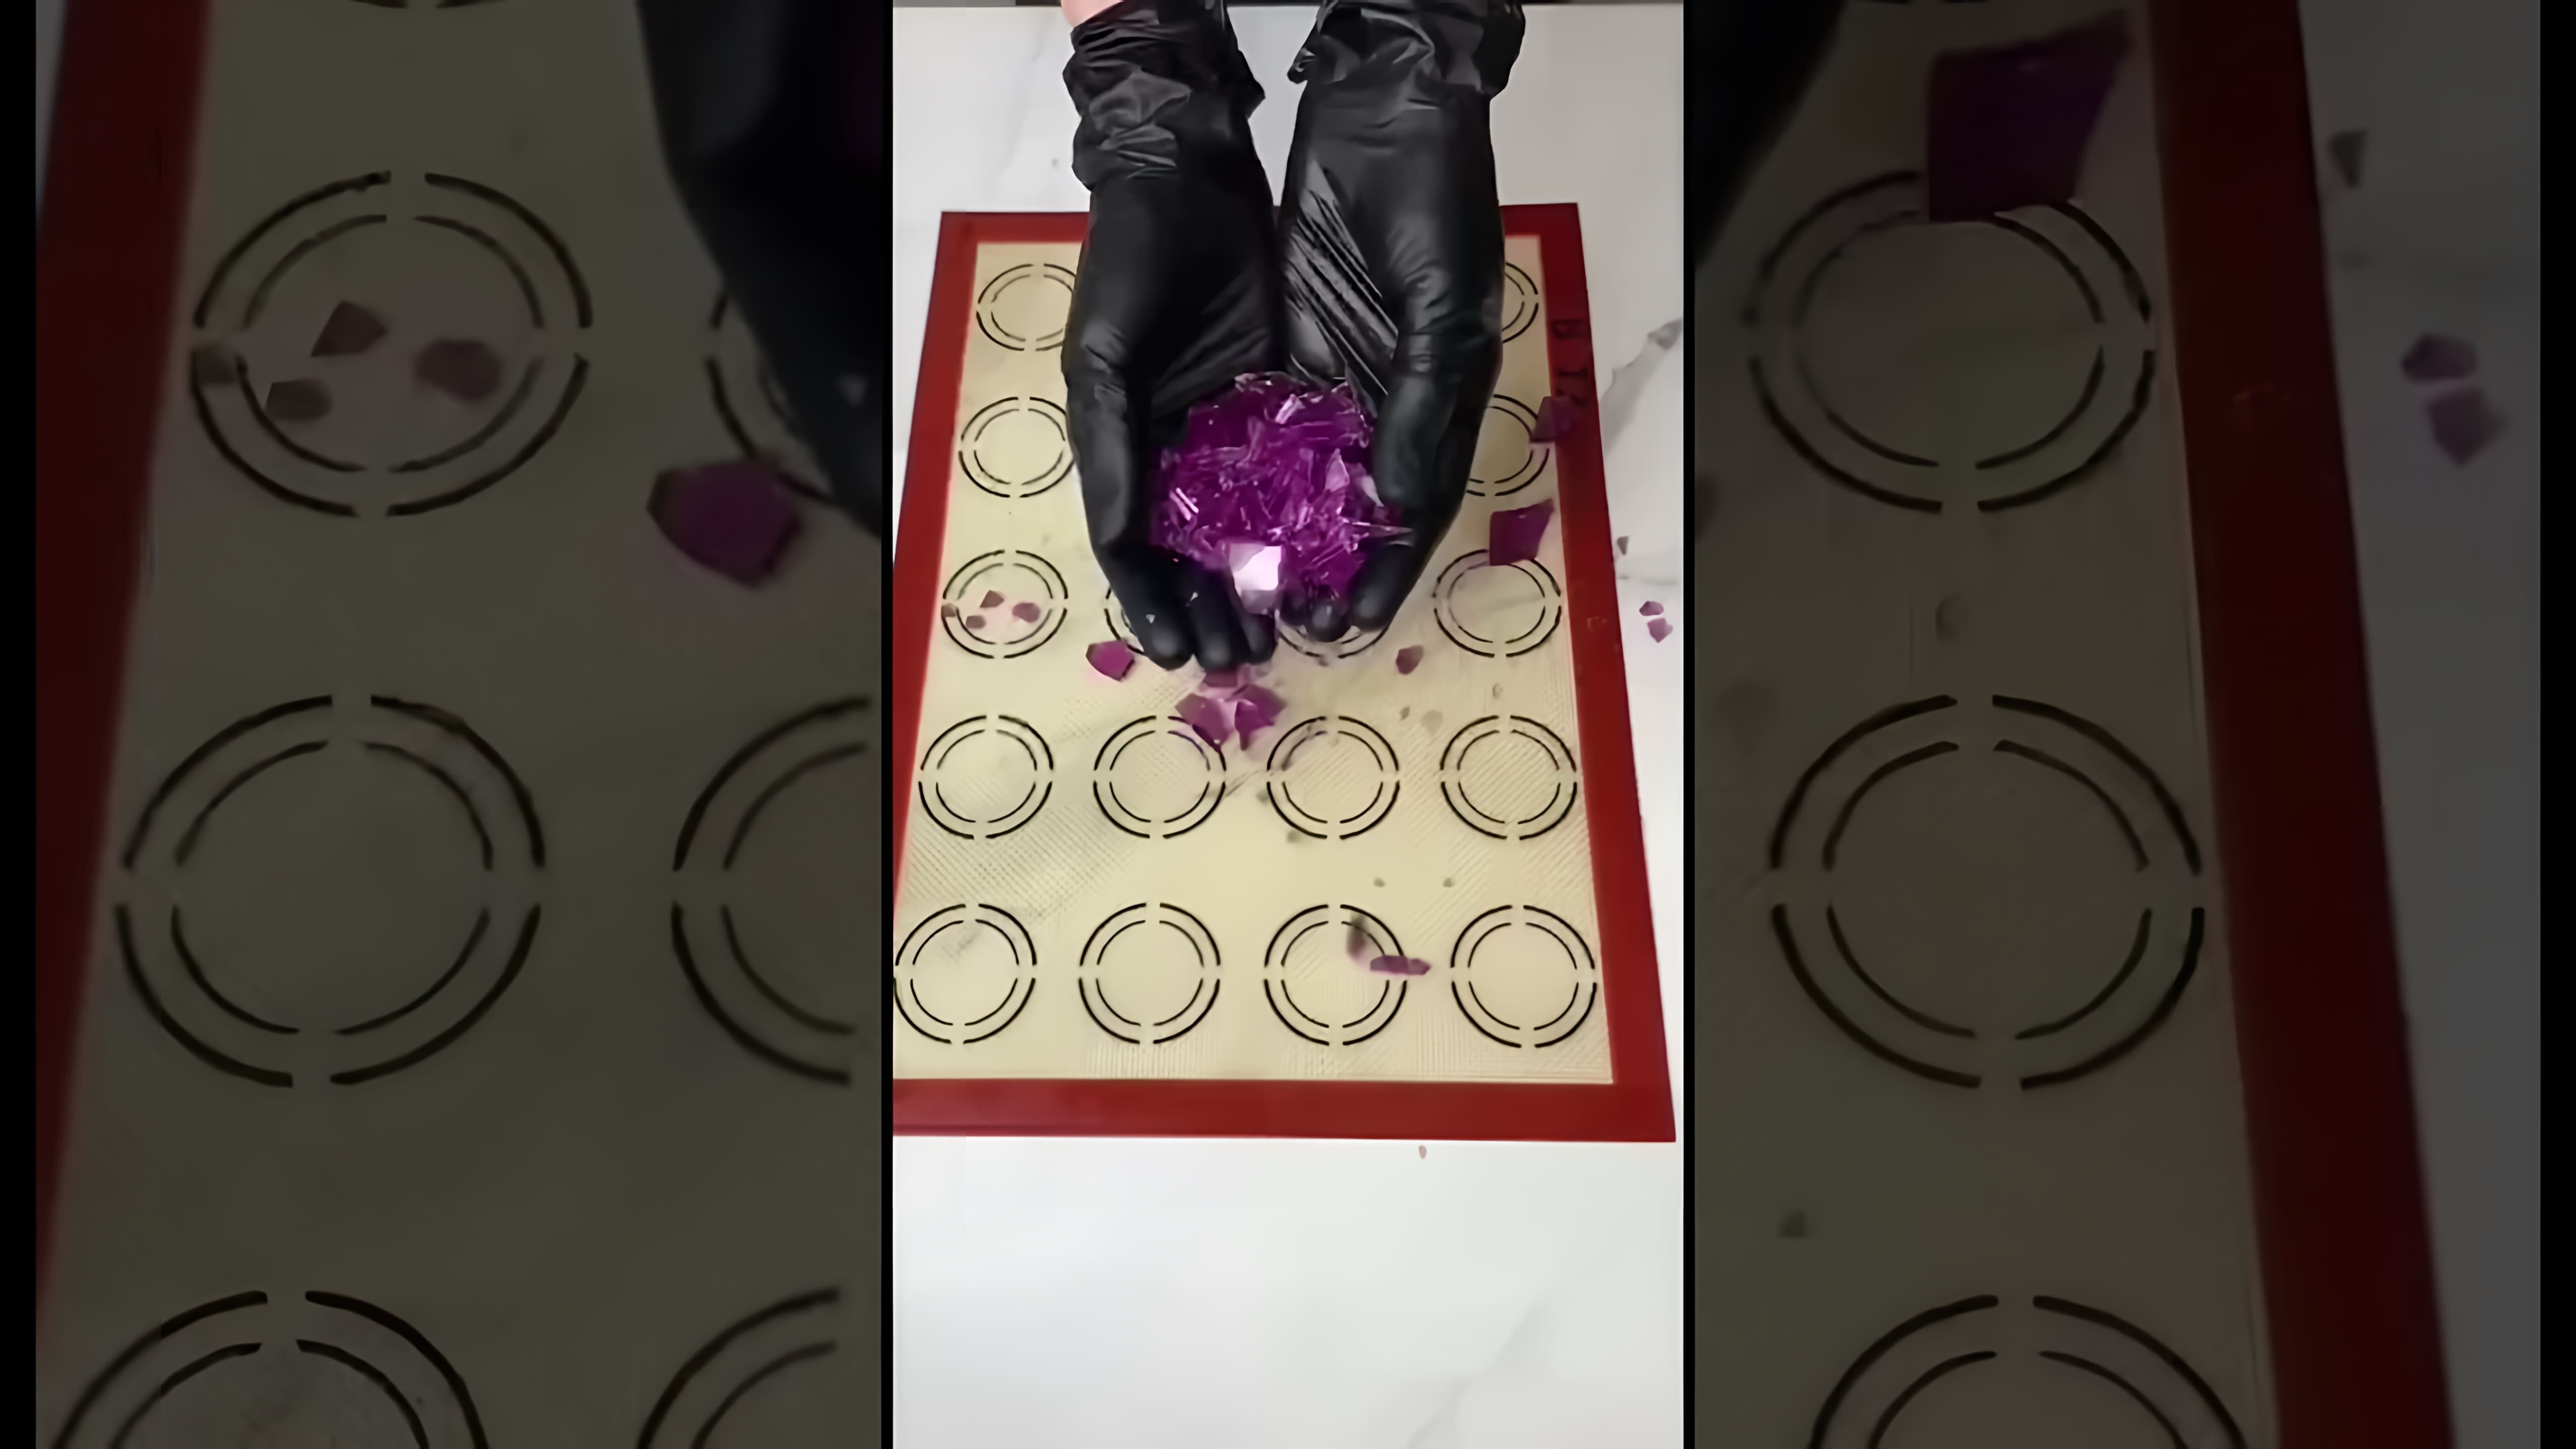 "Как я делаю велюр без краскопульта?" - это видео-ролик, в котором я показываю, как можно создать эффект велюра на торте без использования краскопульта